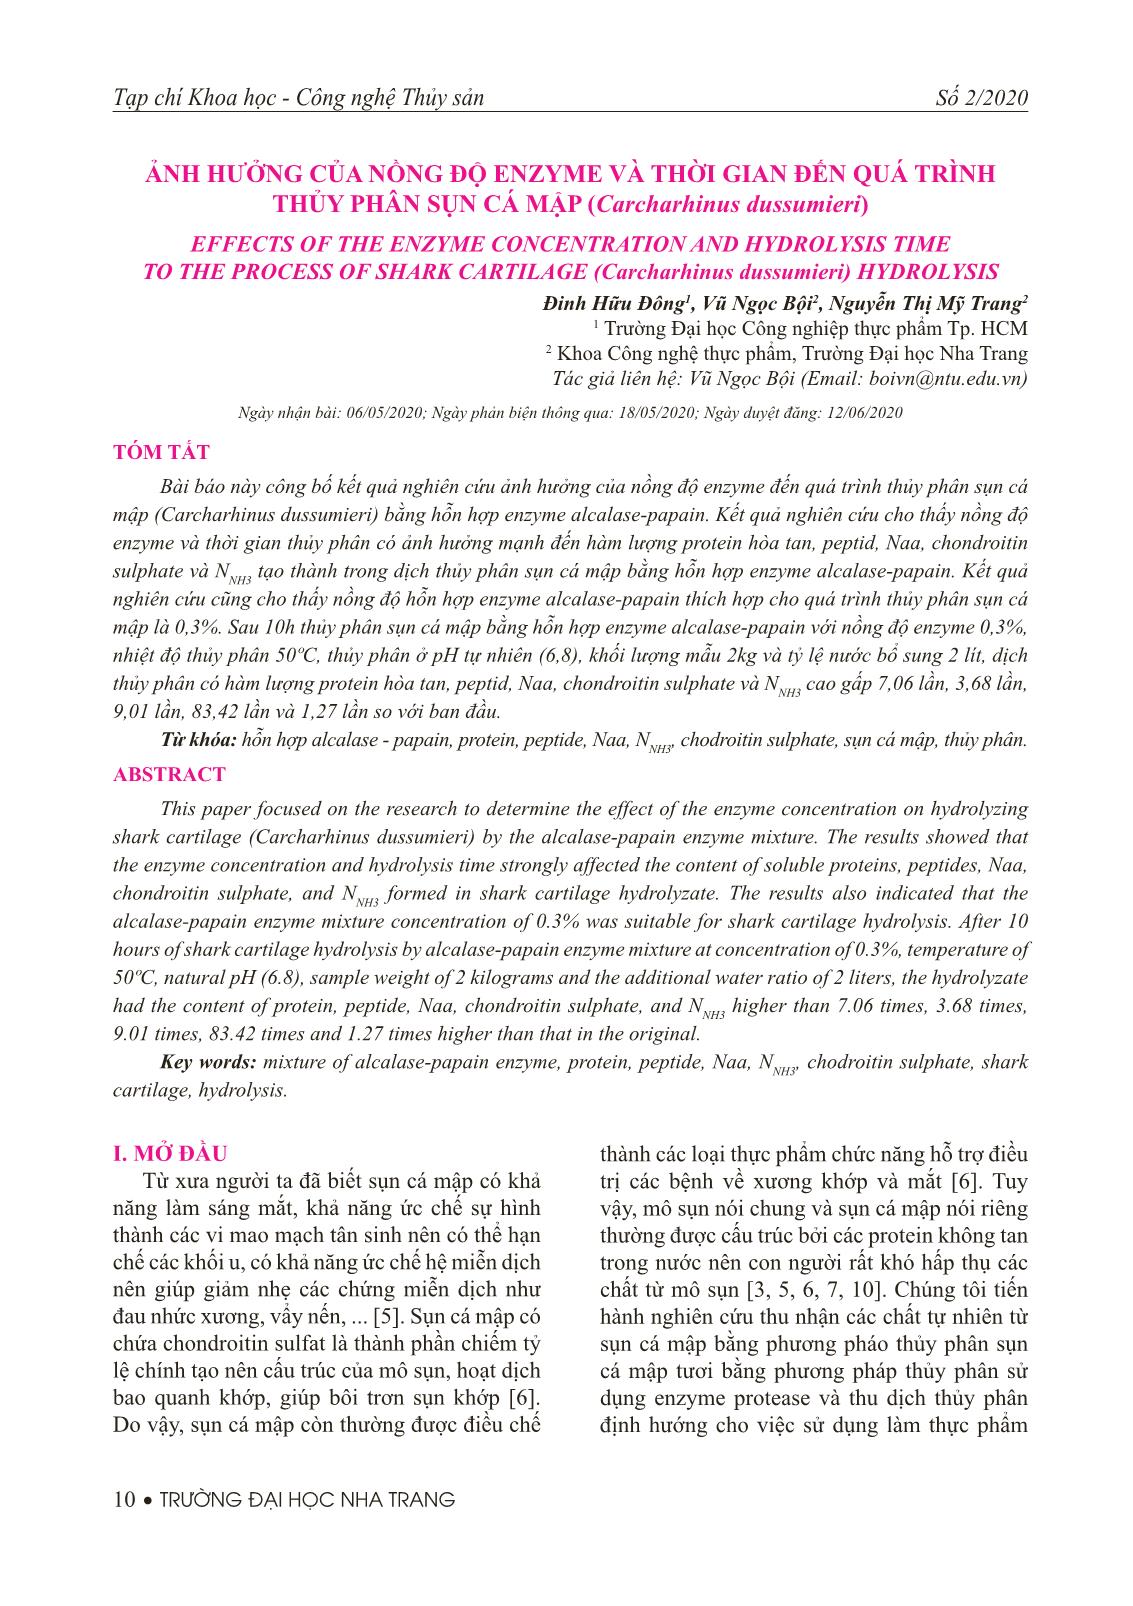 Ảnh hưởng của nồng độ enzyme và thời gian đến quá trình thủy phân sụn cá mập (Carcharhinus dussumieri) trang 1